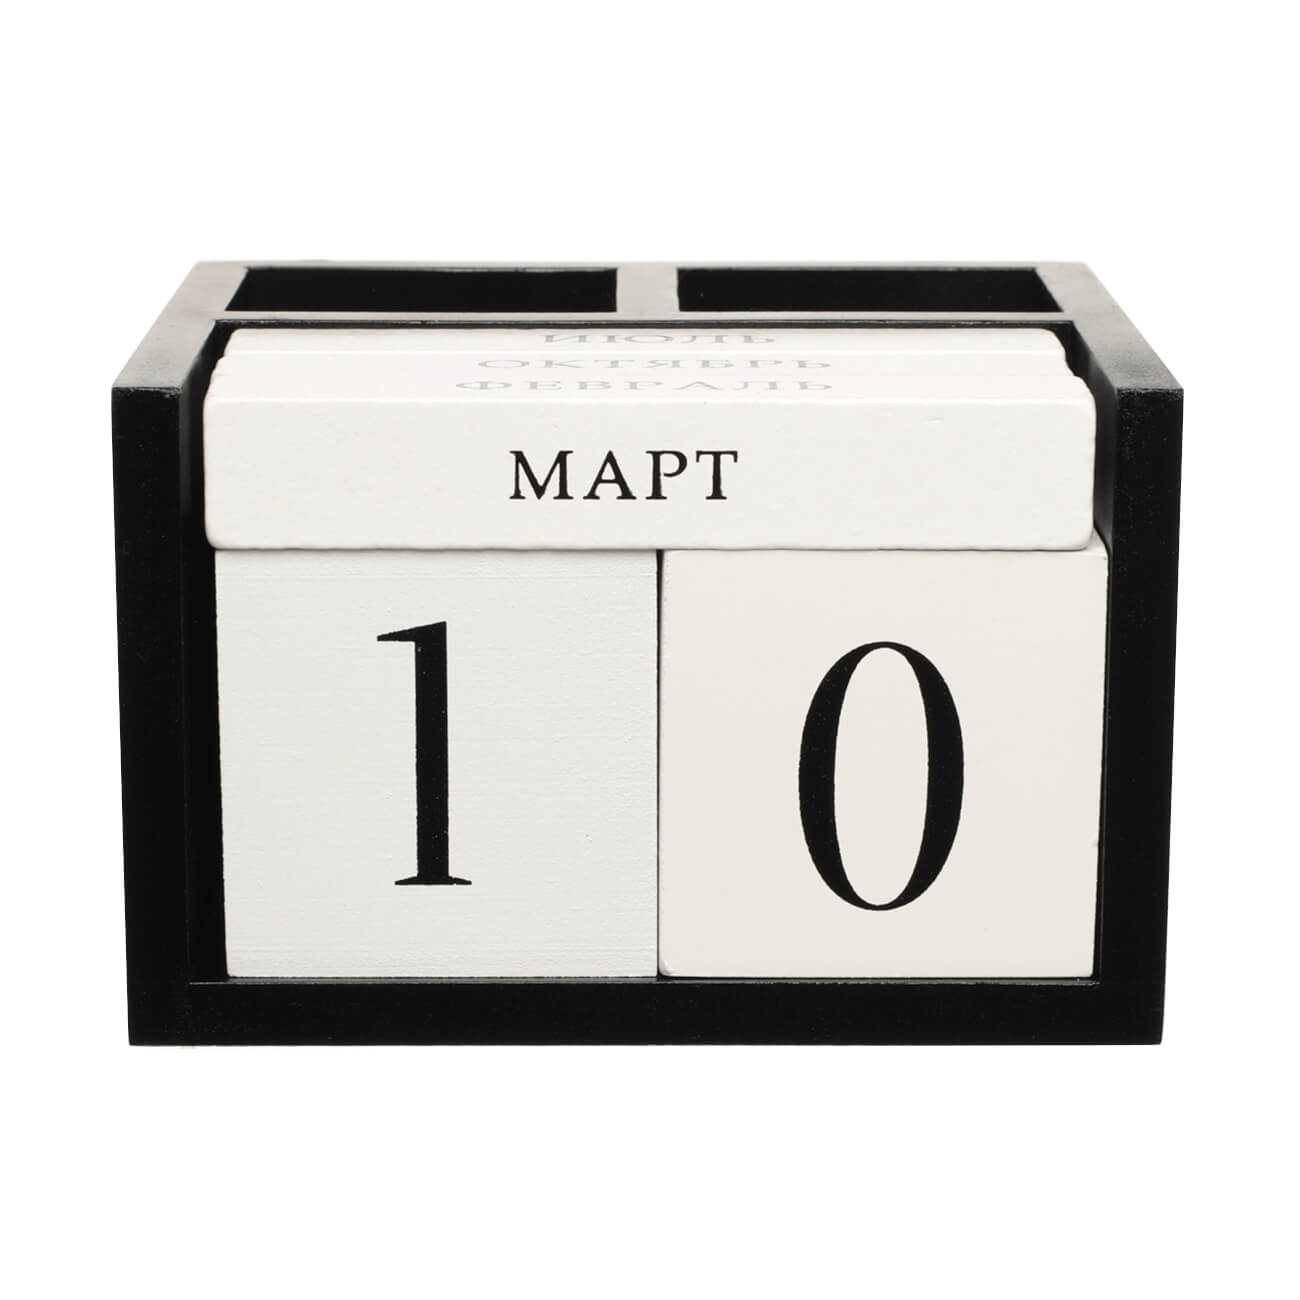 Календарь настольный, 14х13 см, с кубиками, с подставками для ручек, МДФ, черно-белый, B&W redear мужские часы кварцевый механизм деревянный корпус и кожаный ремешок время и календарь дисплей световой указатель секундомер